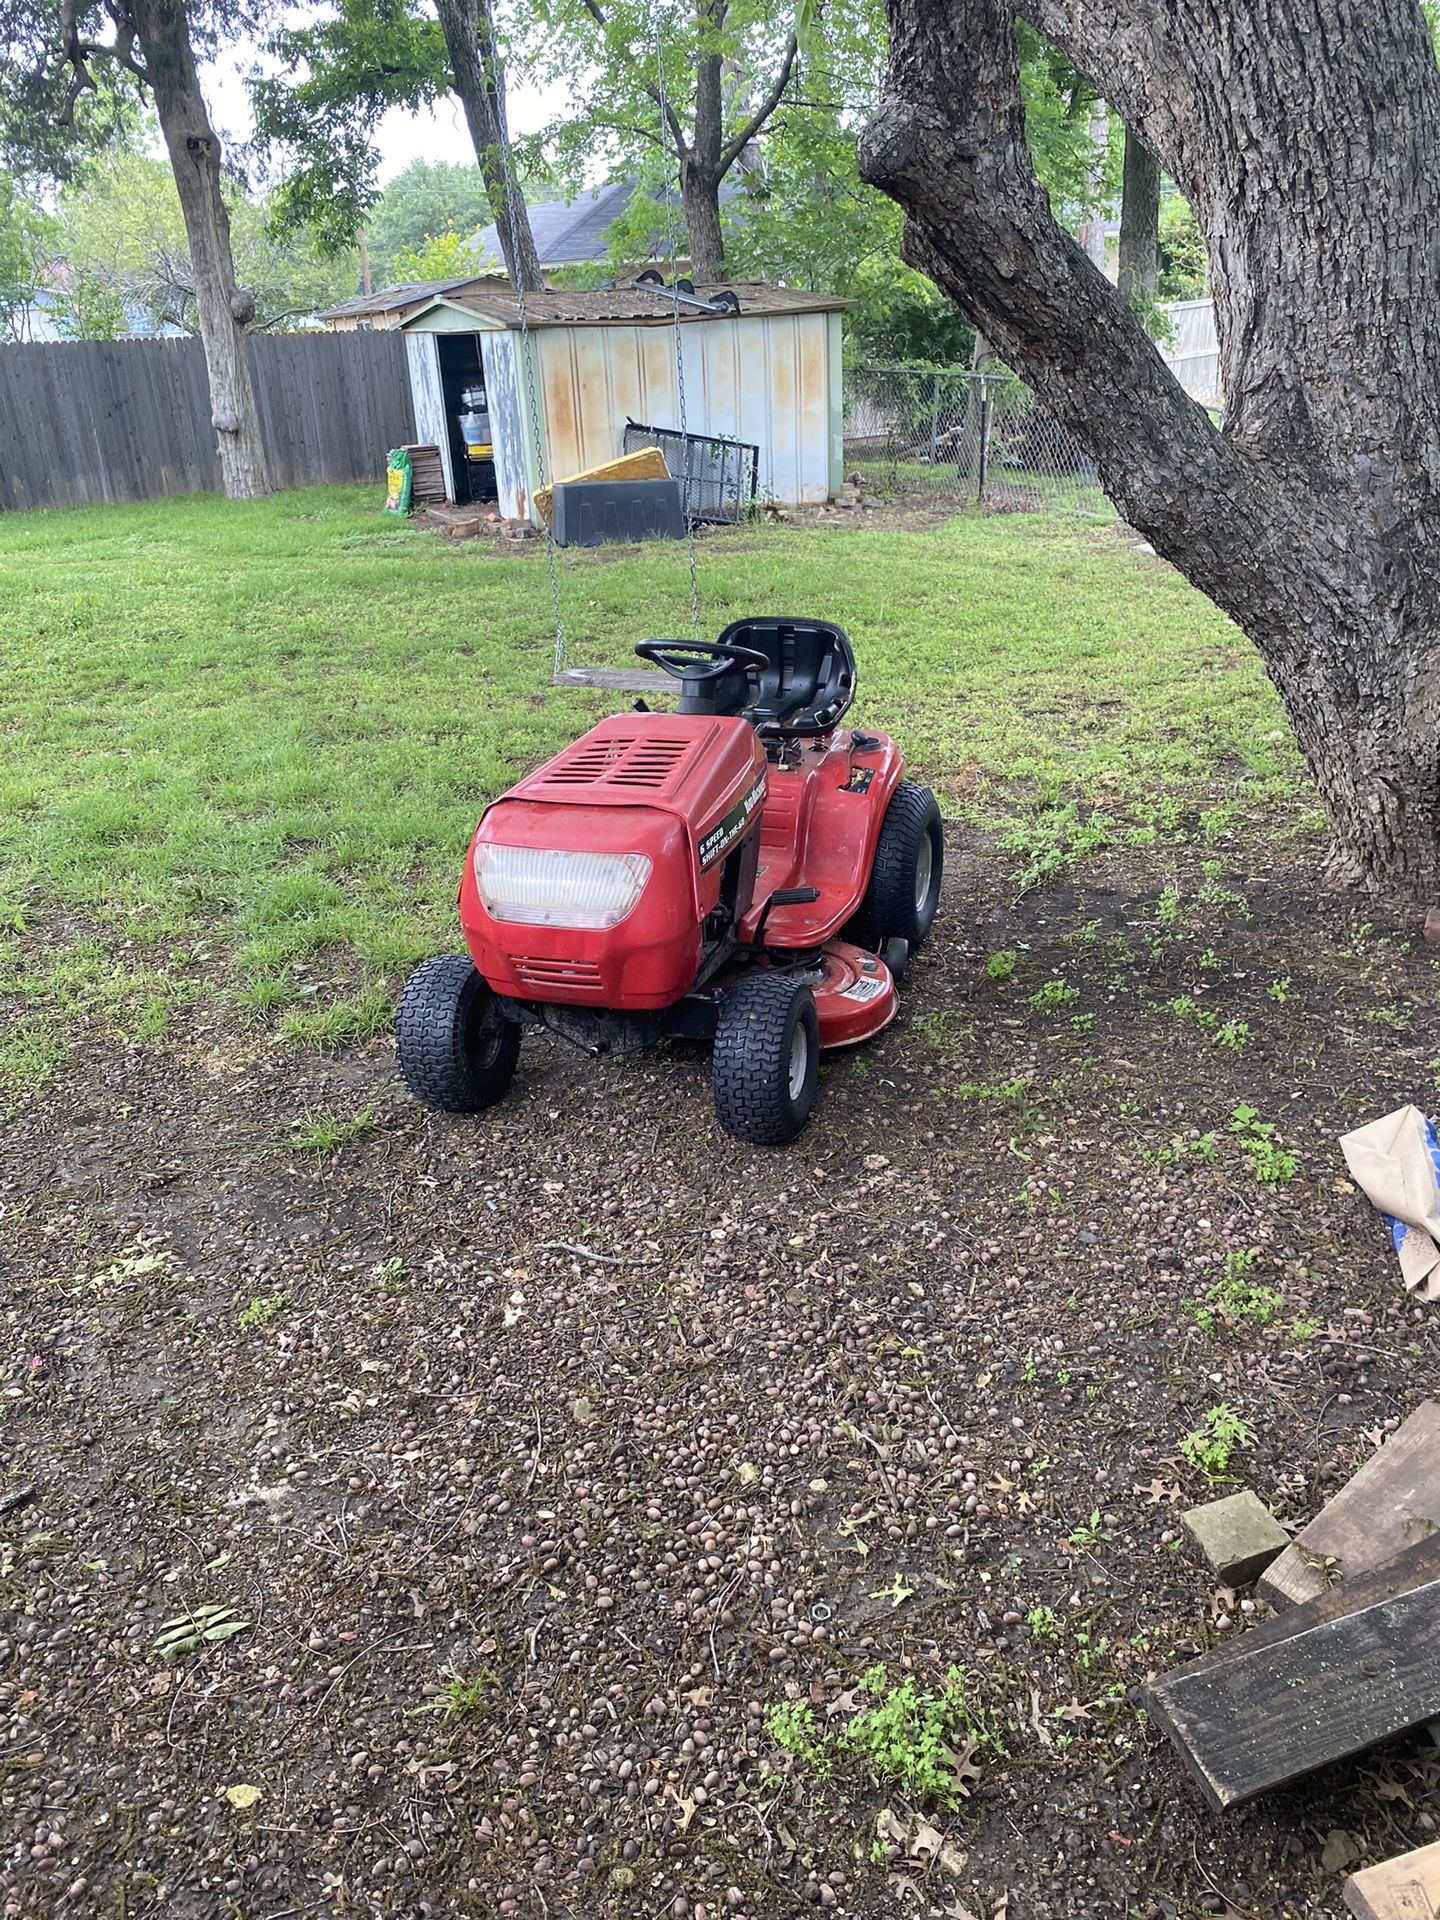 Yard Machine (riding mower)